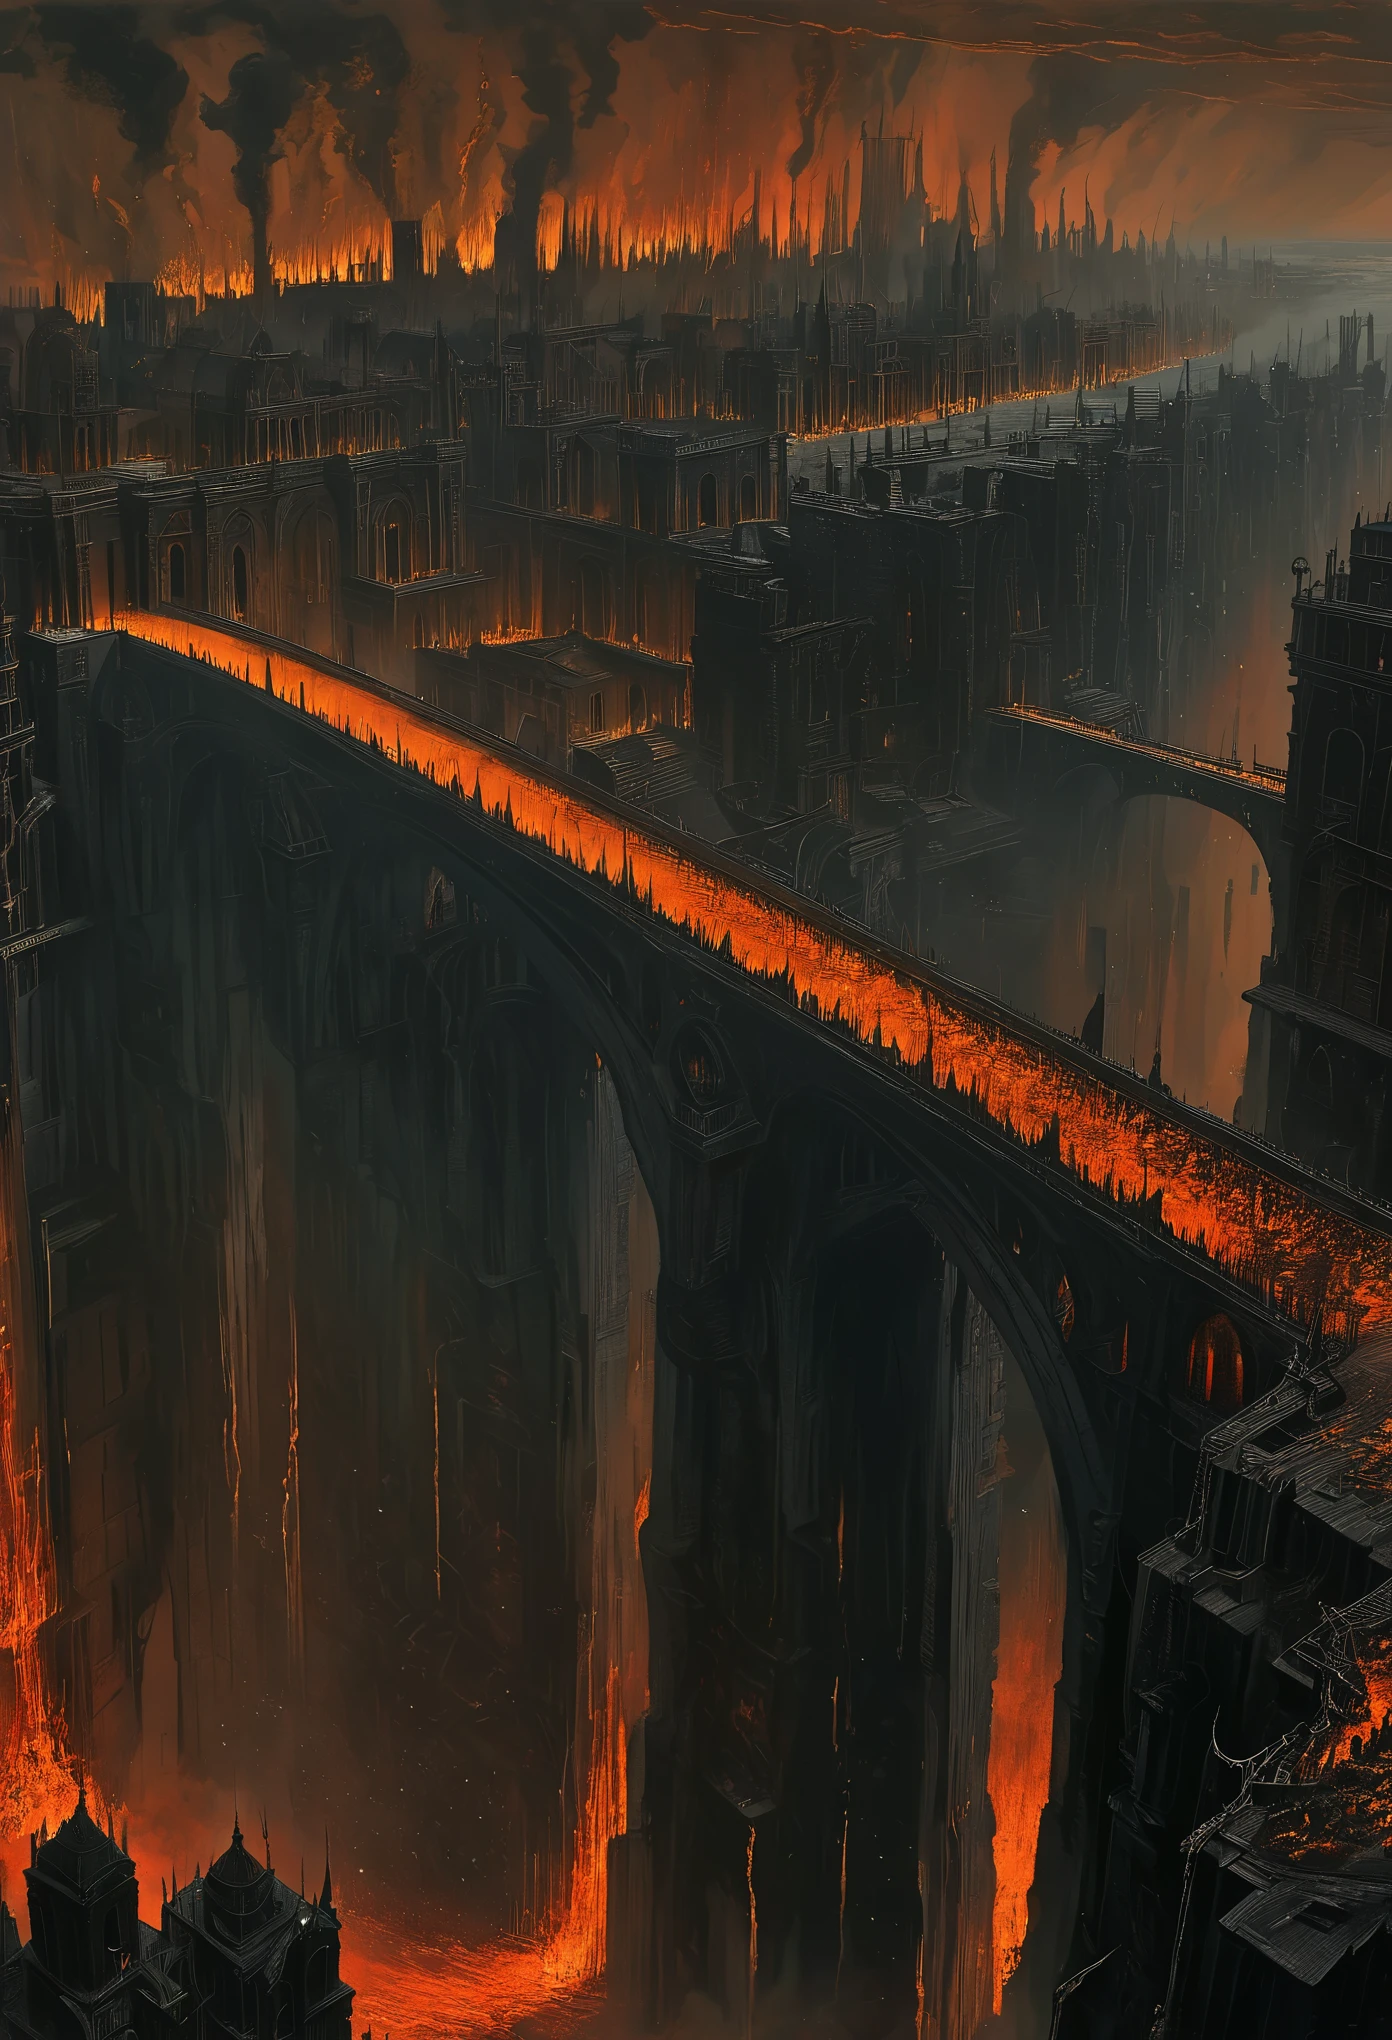 地獄景觀，高聳的高層建築和前景中的一座橋樑, 以古斯塔夫·多爾 (Gustave Dore) 精緻而精湛的風格呈現. 場景品質最高, 具有超詳細的元素和逼真的效果. 用鮮豔而強烈的色彩捕捉地獄般的氣氛, 描繪火熱而險惡的環境. 燈光很有戲劇性, 陰影和閃爍的火焰增加了場景的深度和對比度. 這座橋成為焦點, 通往遠處的地獄城. 建築物的設計十分複雜, 展示地下世界的宏偉和建築. 整體構圖散發出一種黑暗和絕望的感覺, 喚起多爾標誌性插圖中強大而令人難忘的意象.